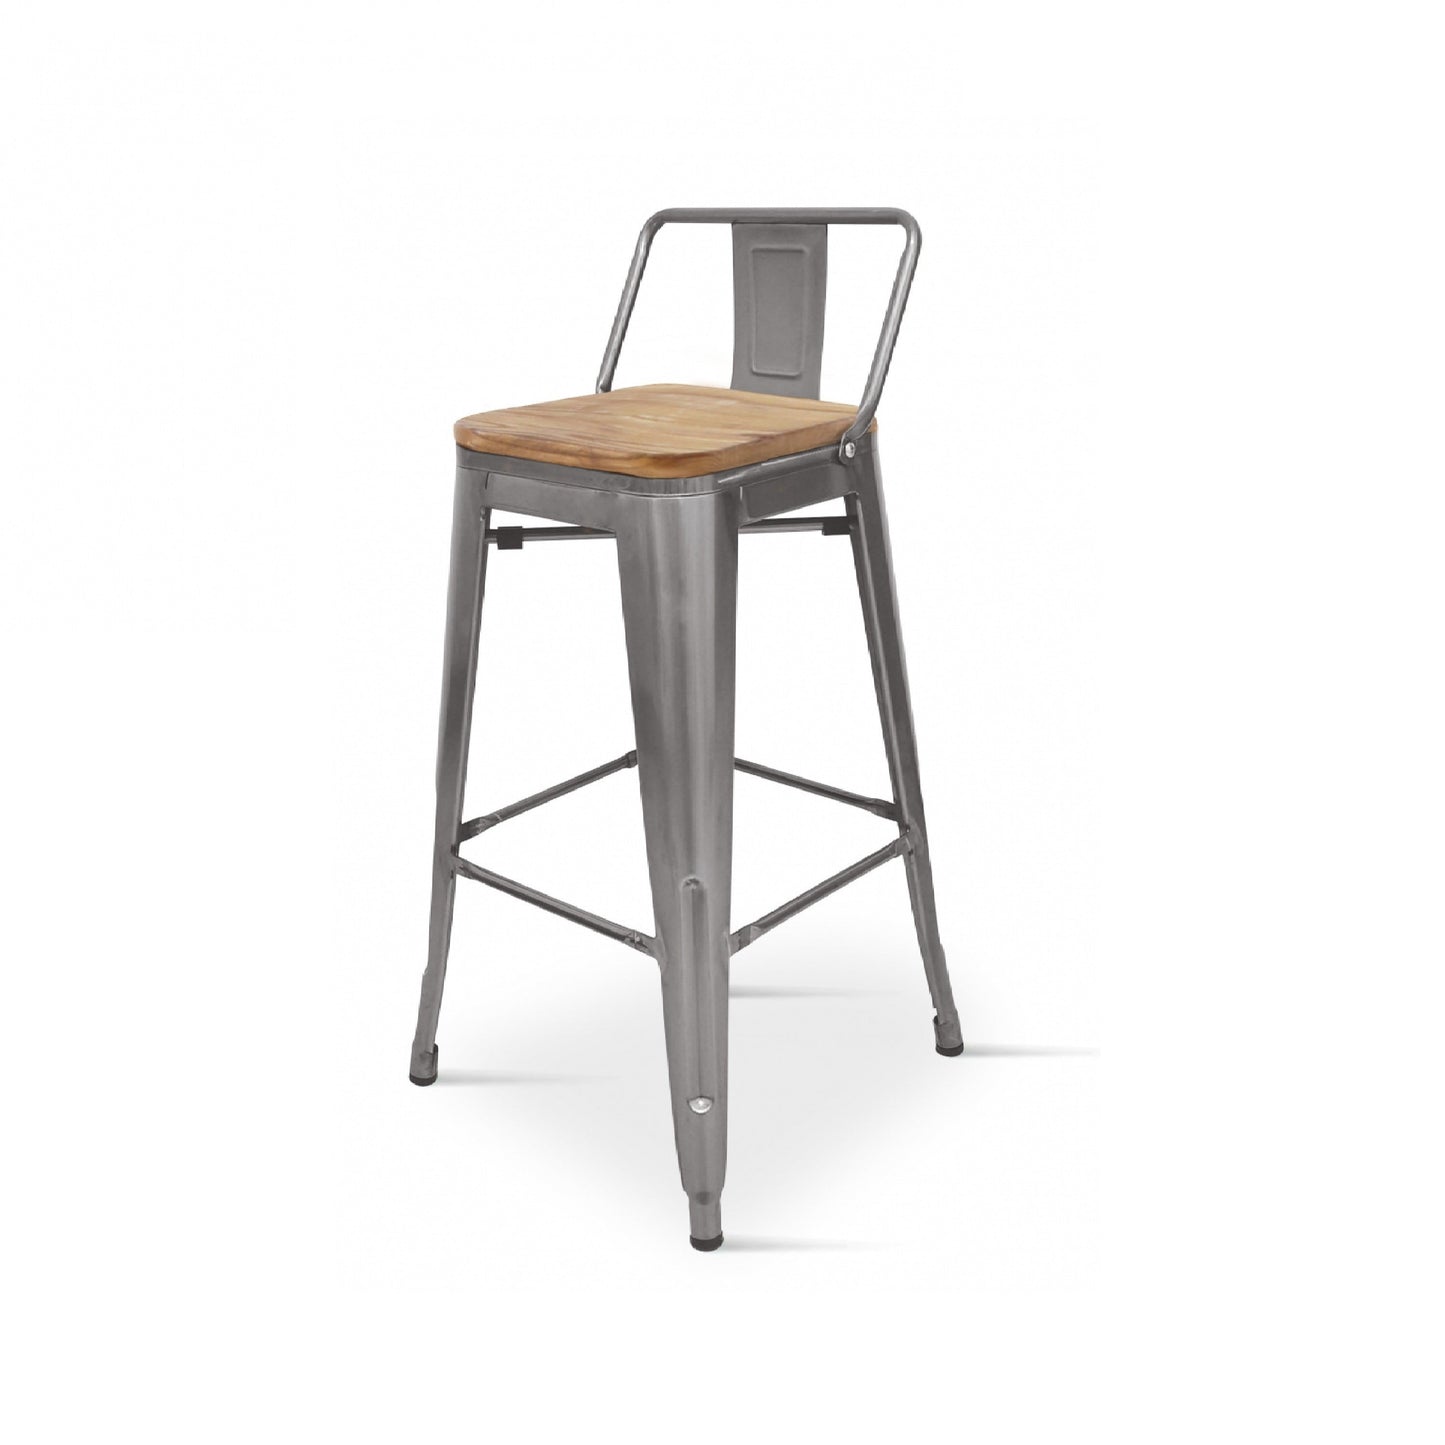 Tabouret de bar style industriel avec dossier en métal brut aspect galvanisé et assise en bois clair - Hauteur 76 cm